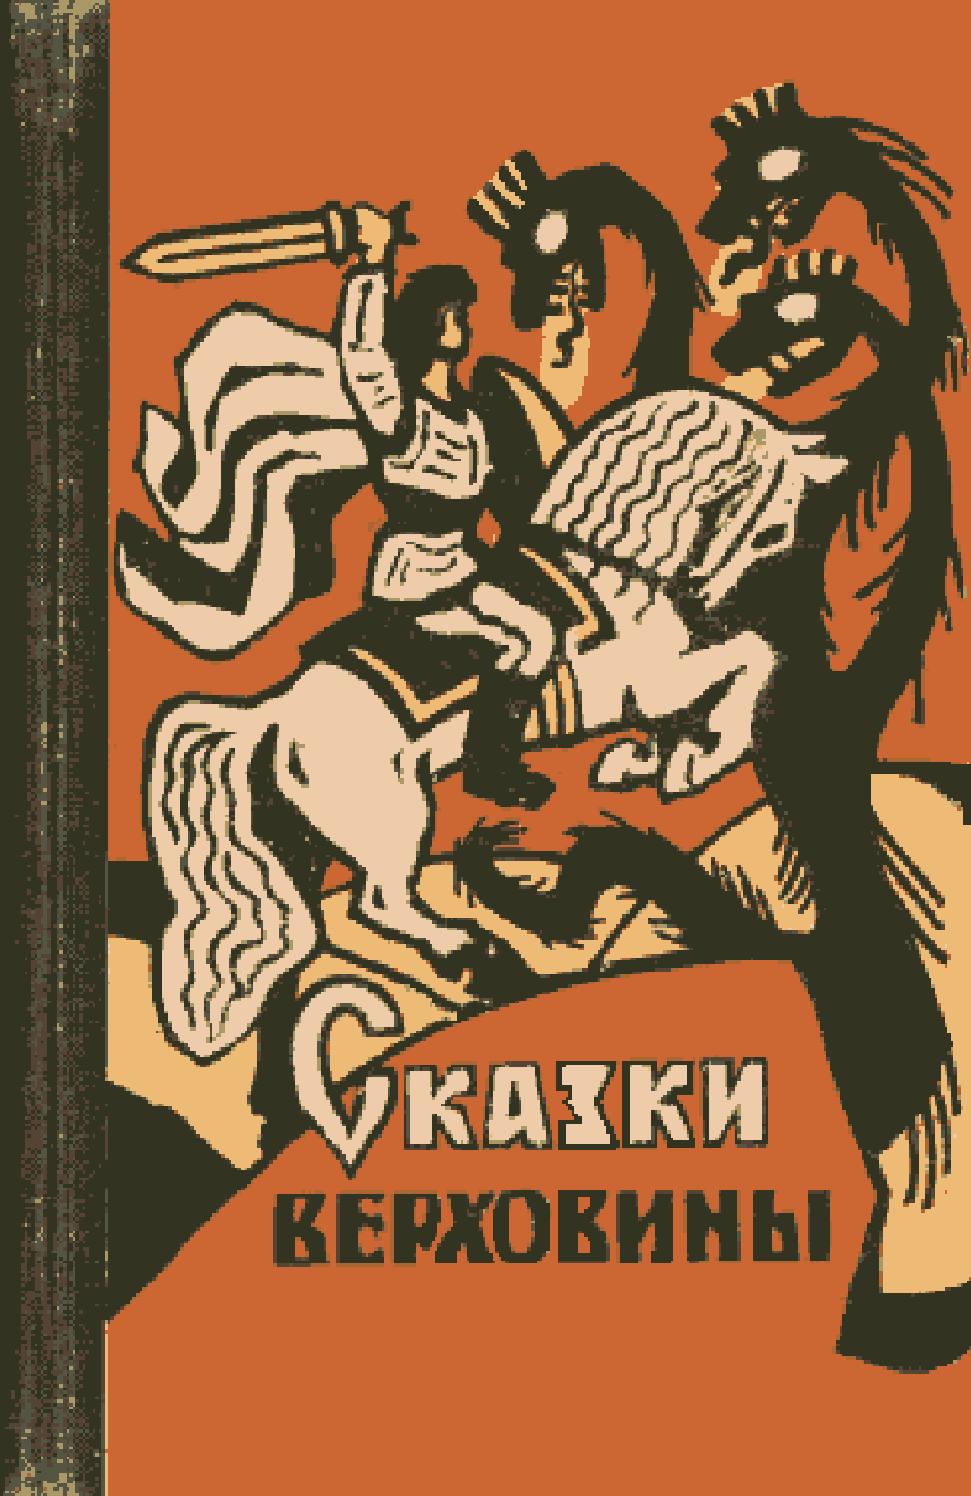 Сказки Верховины, 1963, Михаил Чендей